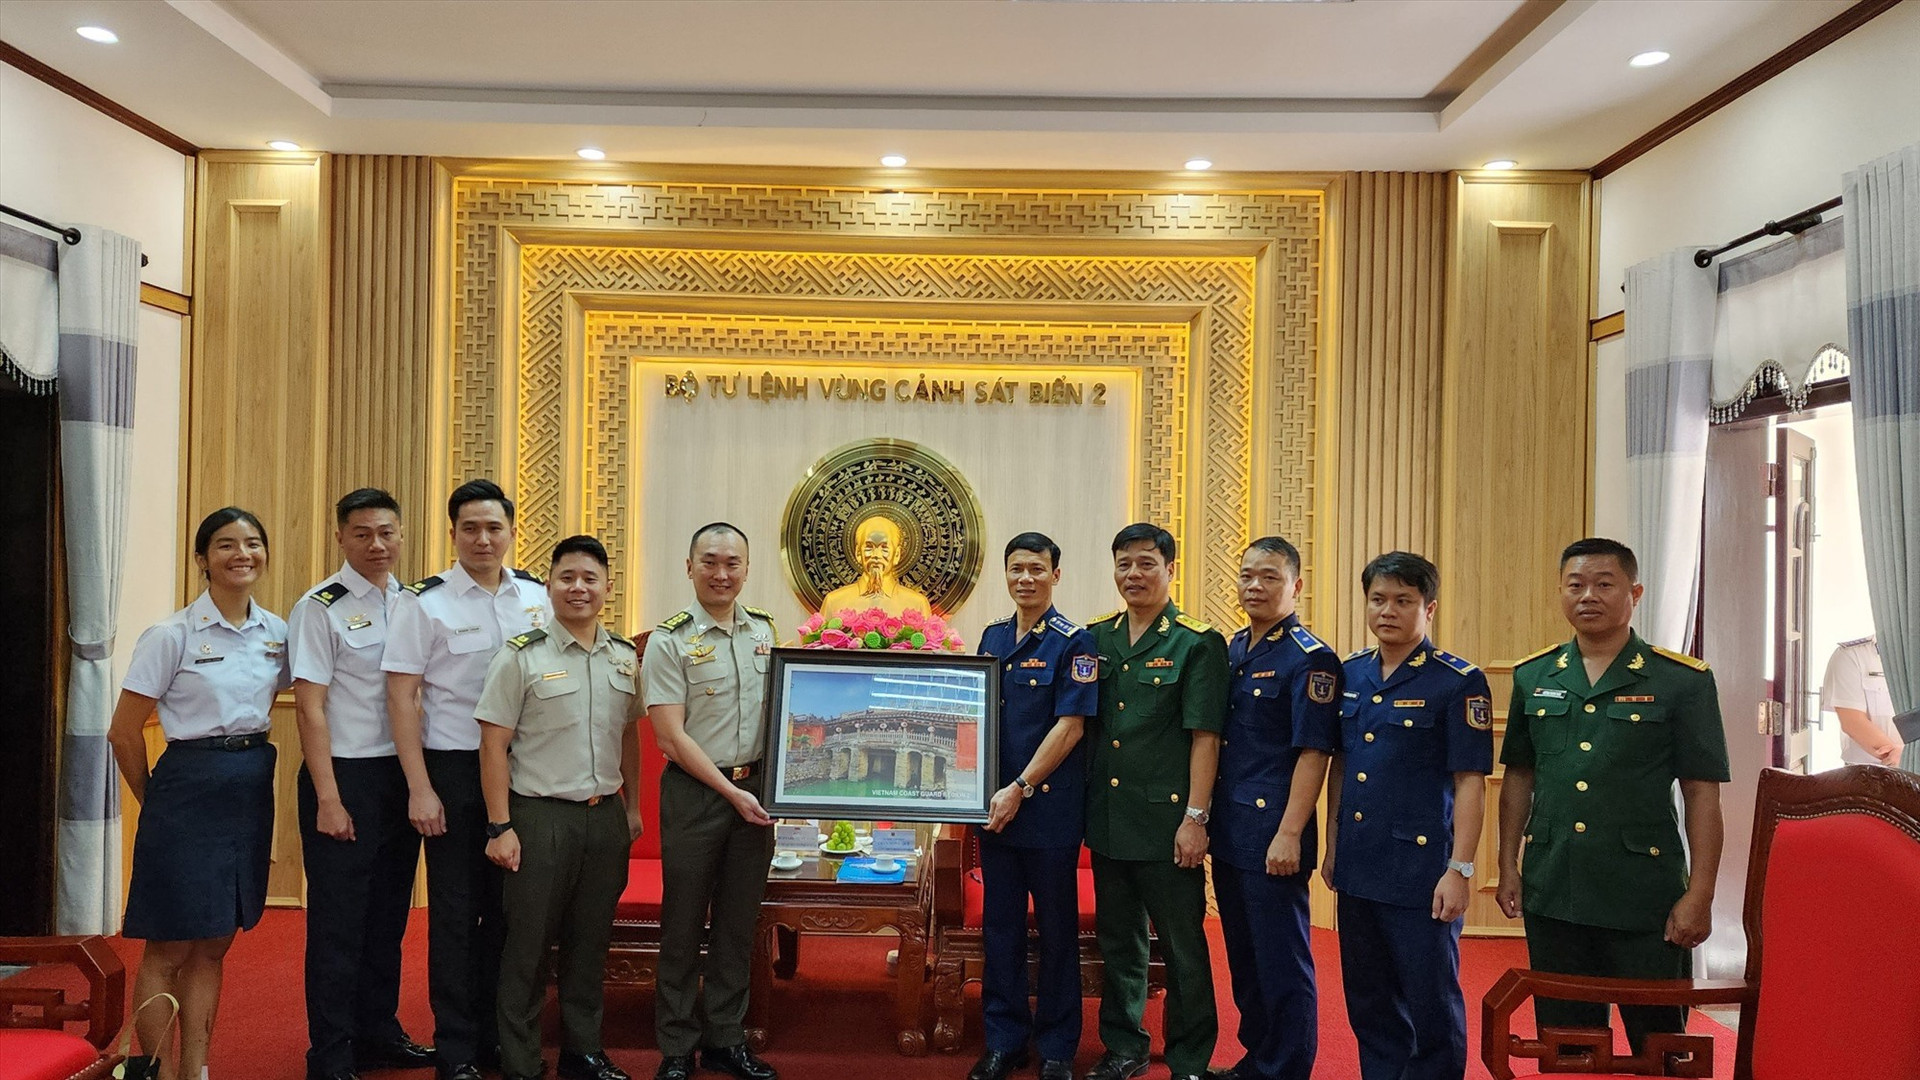 Lãnh đạo Bộ Tư lệnh Vùng Cảnh sát biển 2 tặng quà lưu niệm cho đoàn Sĩ quan trẻ Quân đội Singapore.